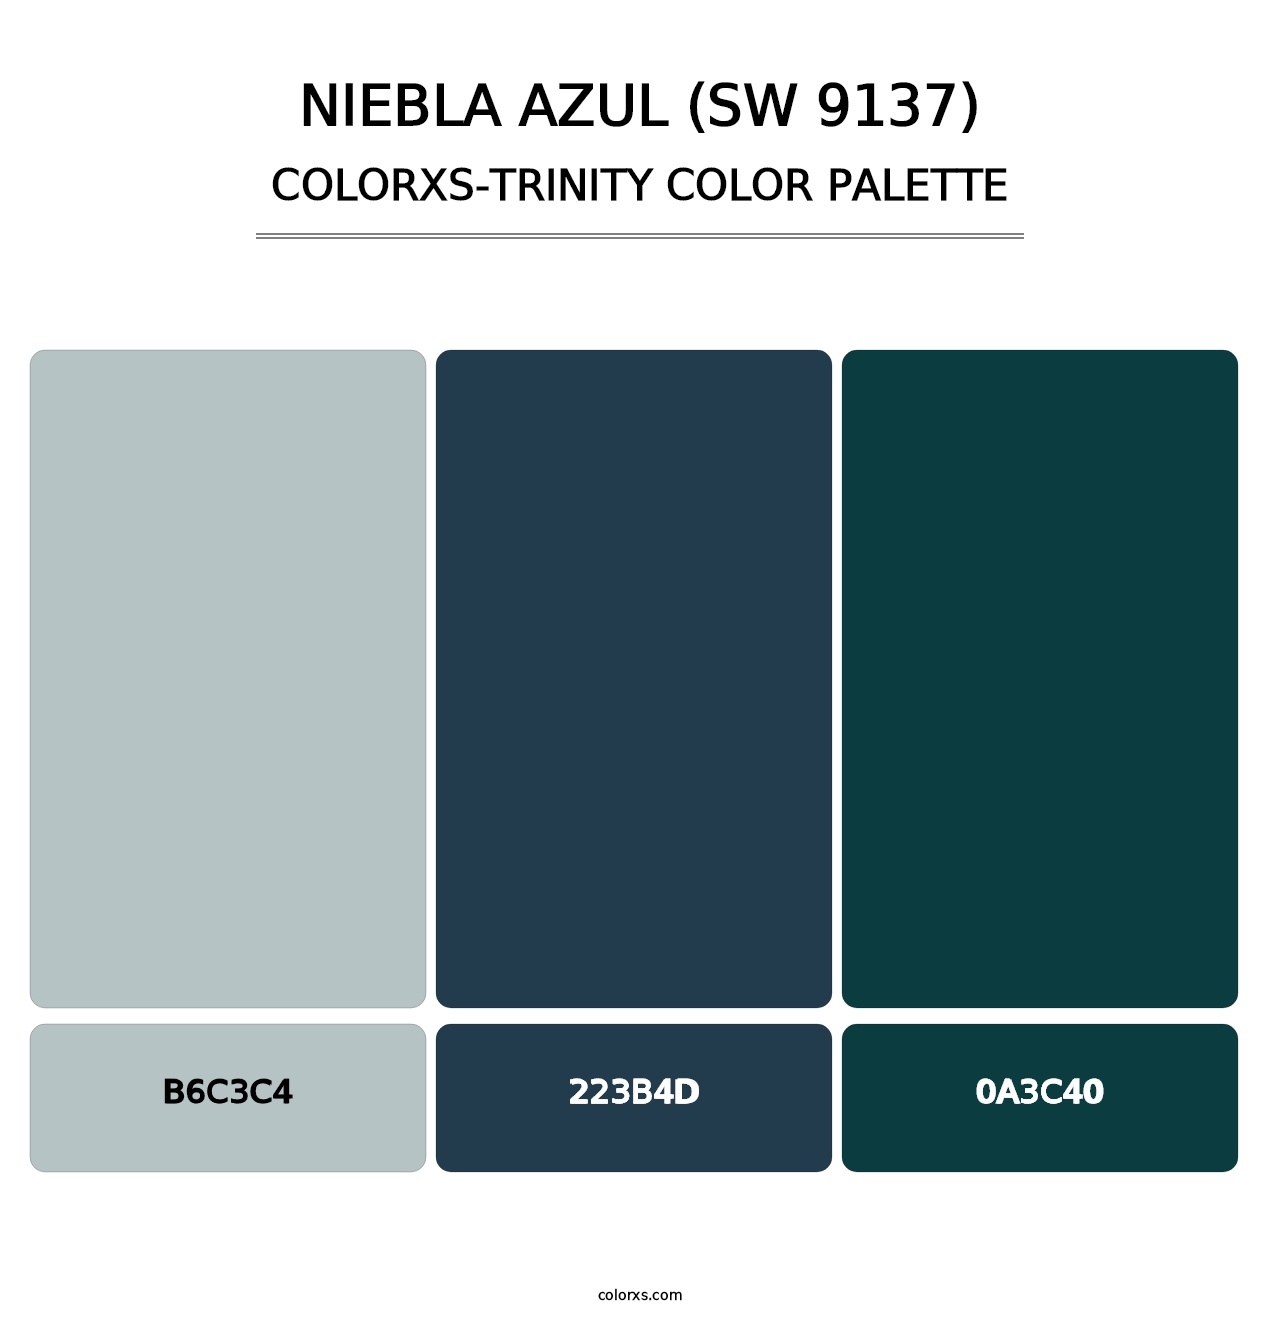 Niebla Azul (SW 9137) - Colorxs Trinity Palette